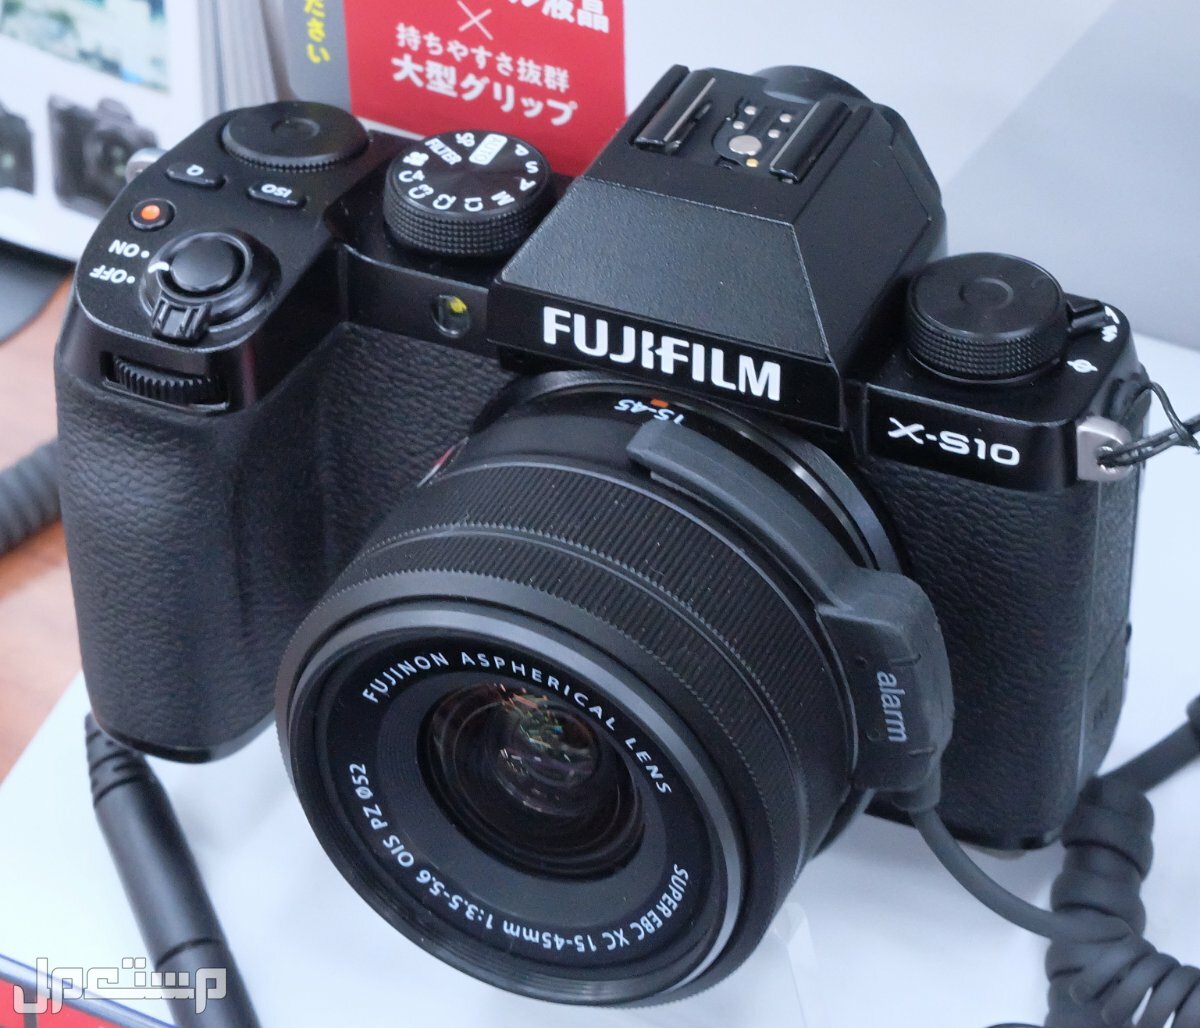 مواصفات ومميزات وعيوب كاميرات التصوير فوجي فيلم في لبنان مواصفات كاميرا Fujifilm X-S10